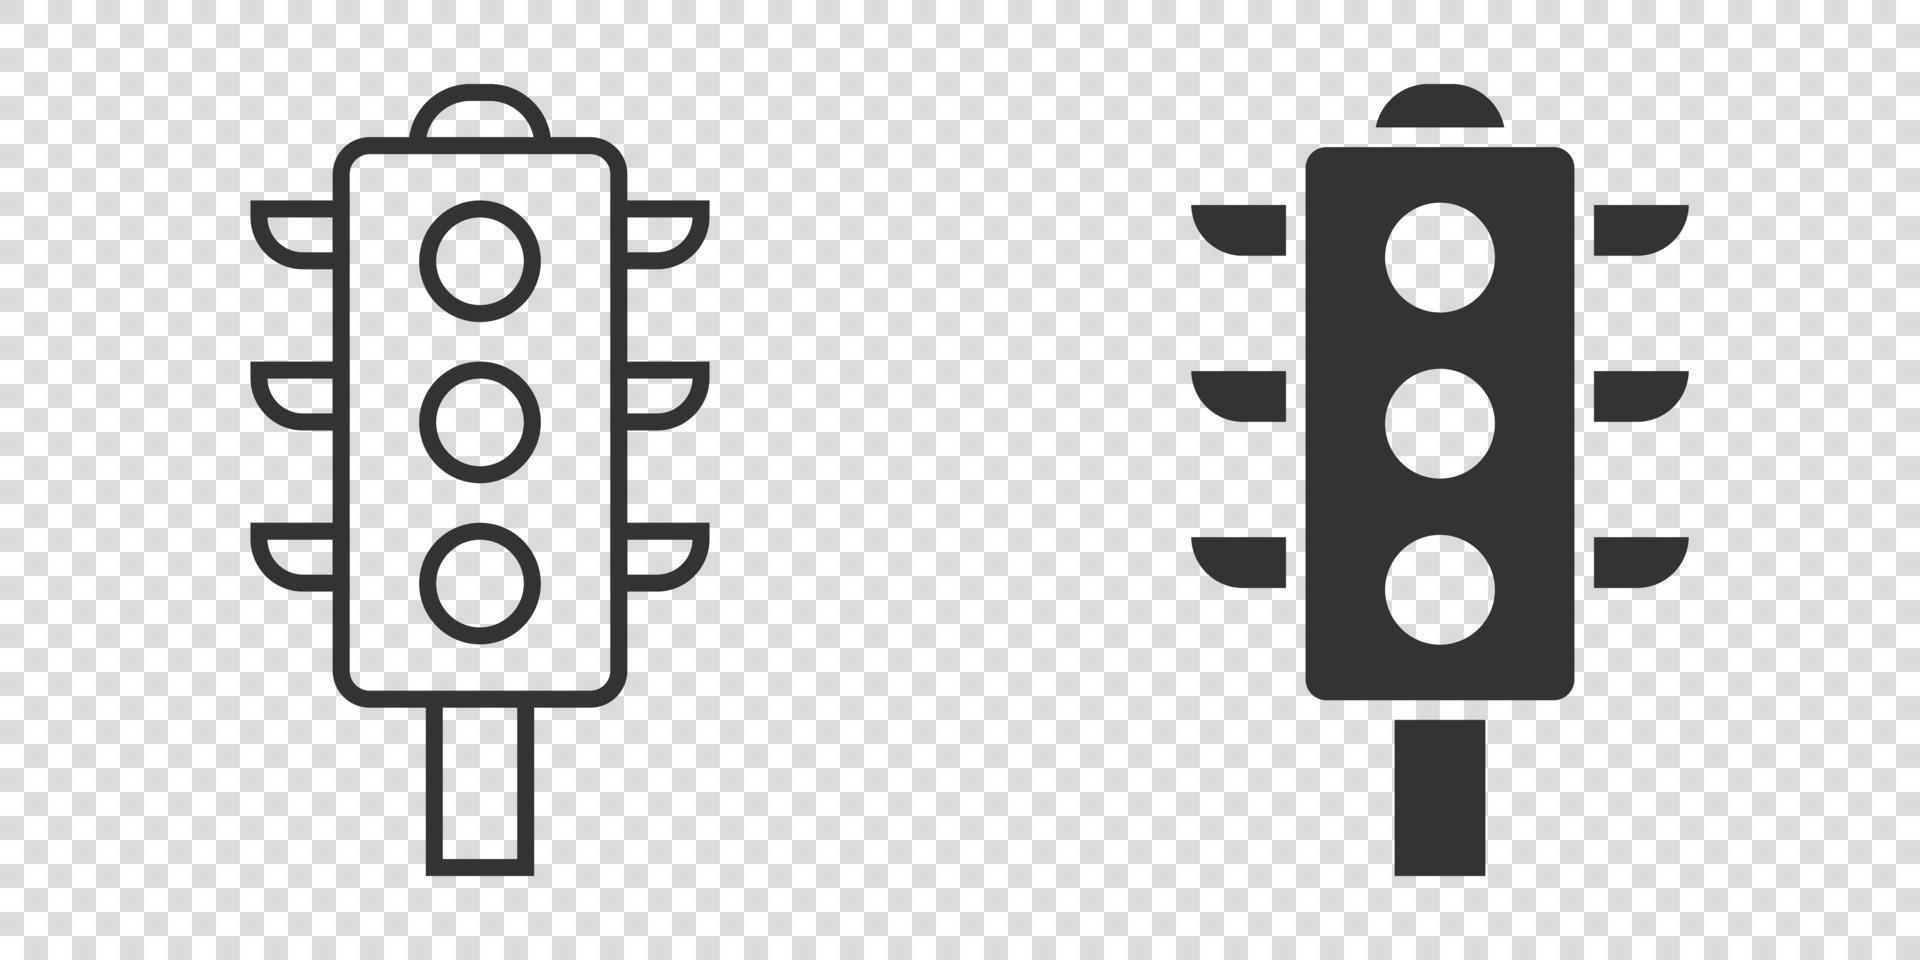 ícone de semáforo em estilo simples. ilustração em vetor semáforo em fundo branco isolado. conceito de negócio de encruzilhada.